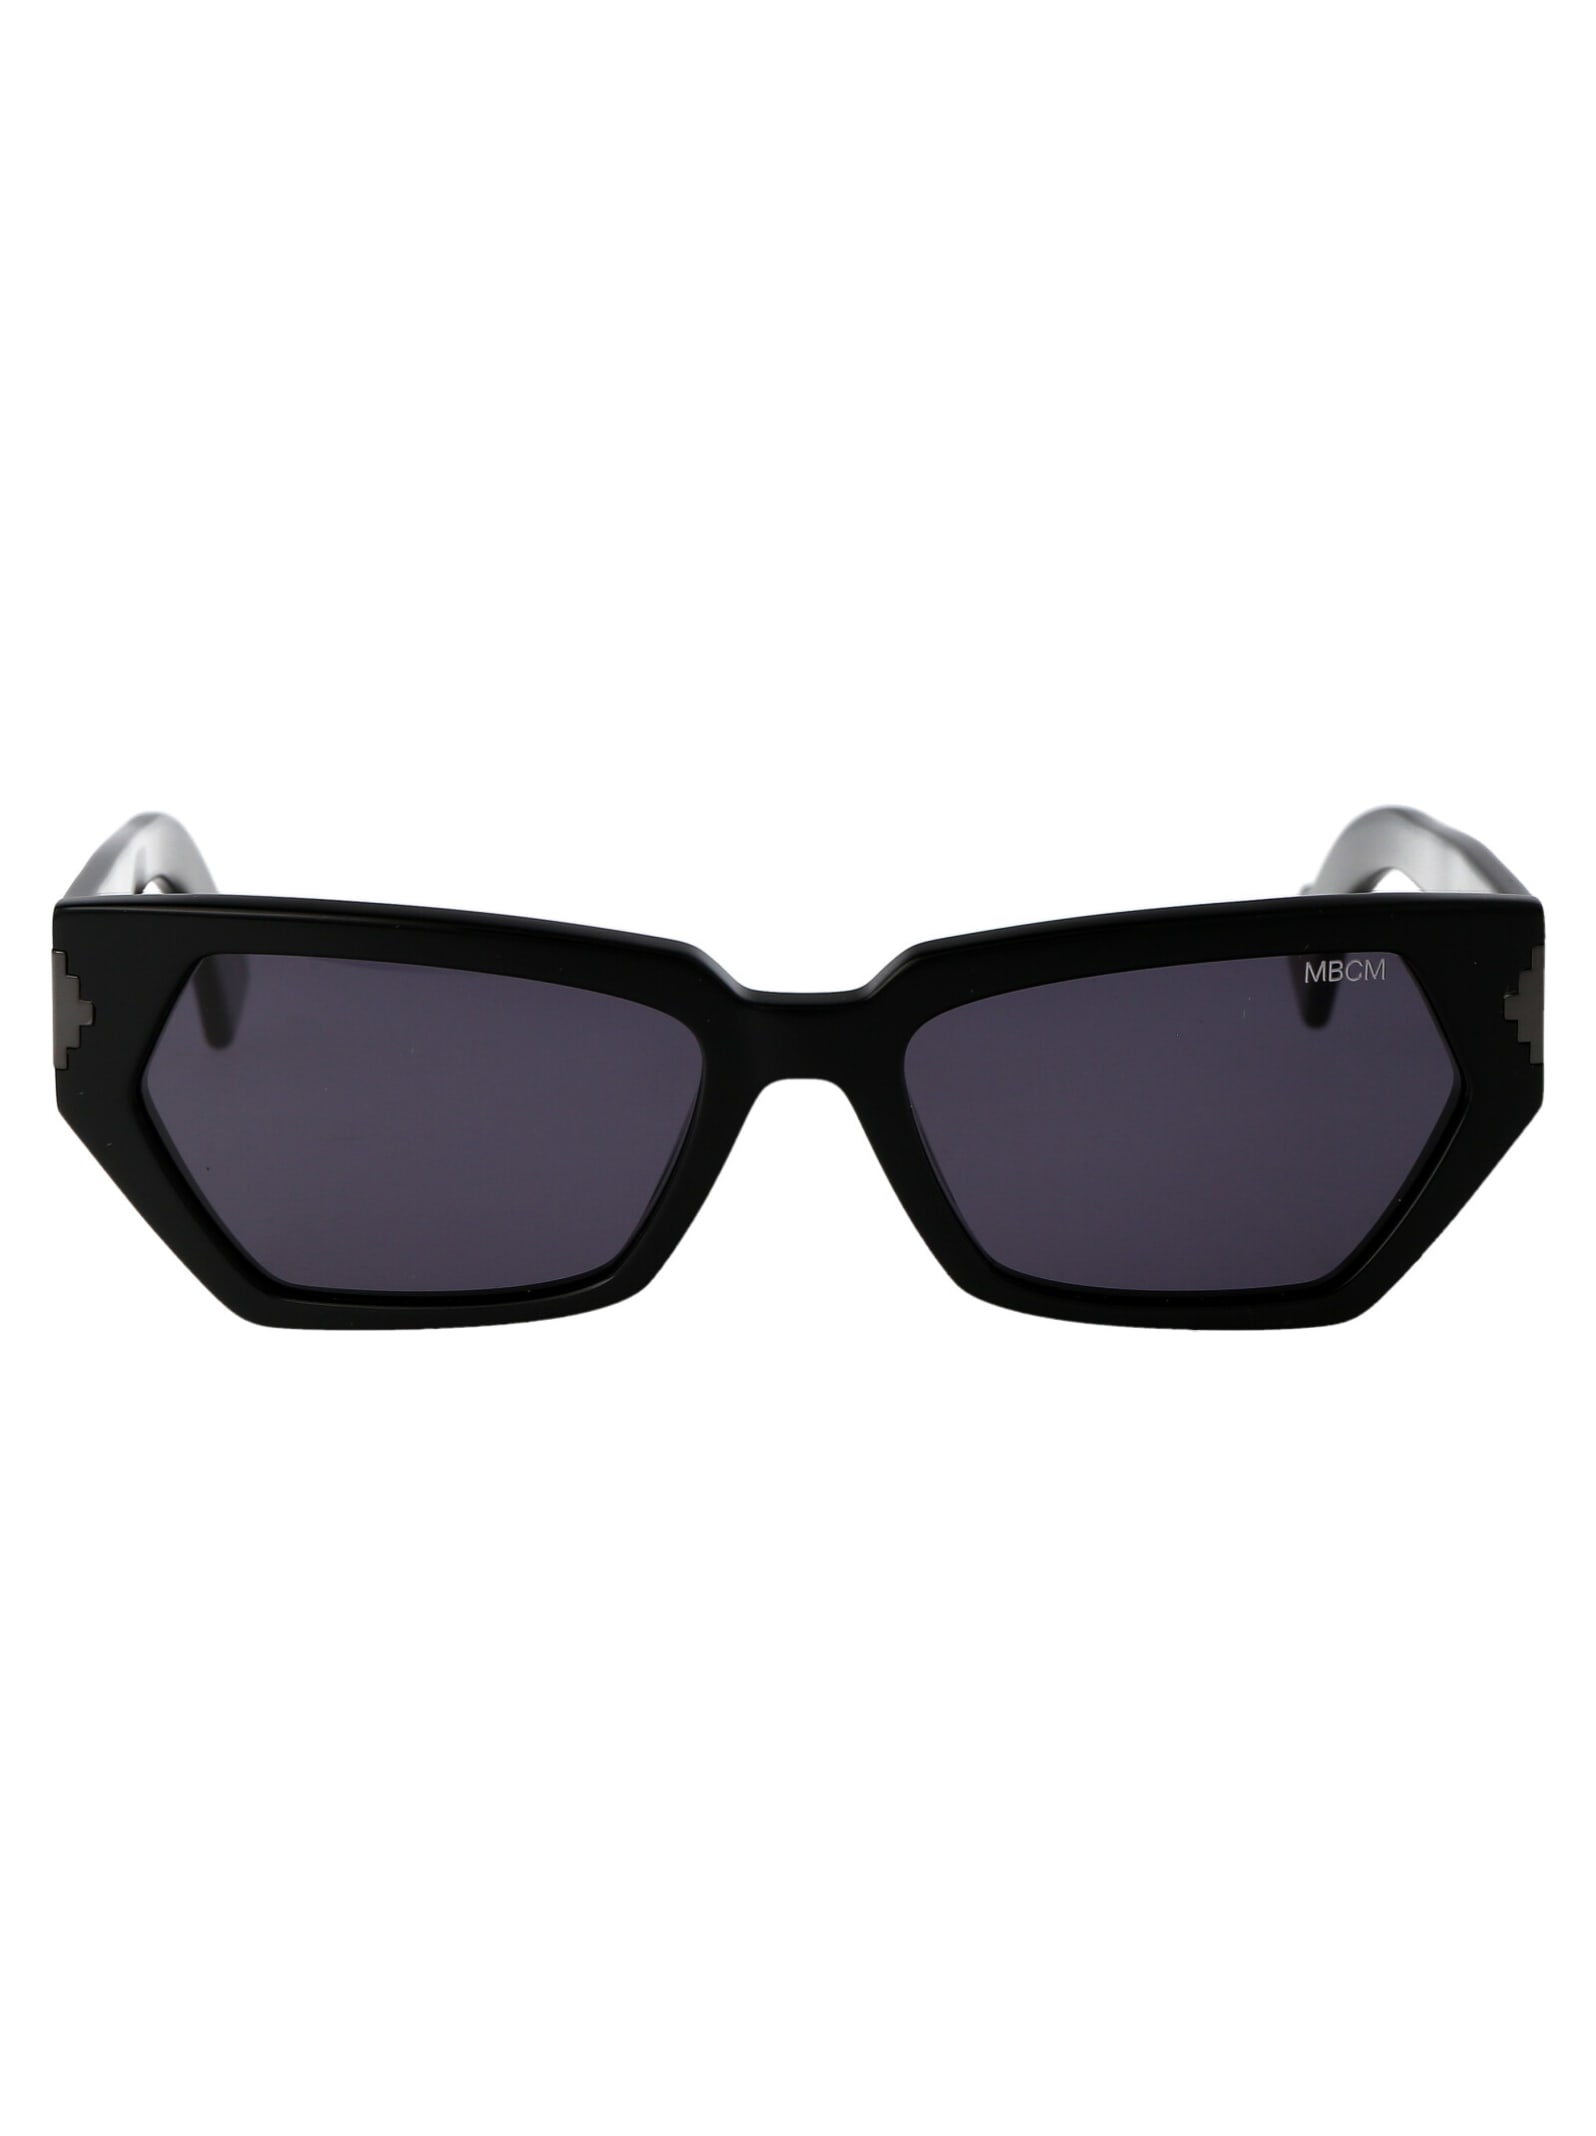 Arica Sunglasses